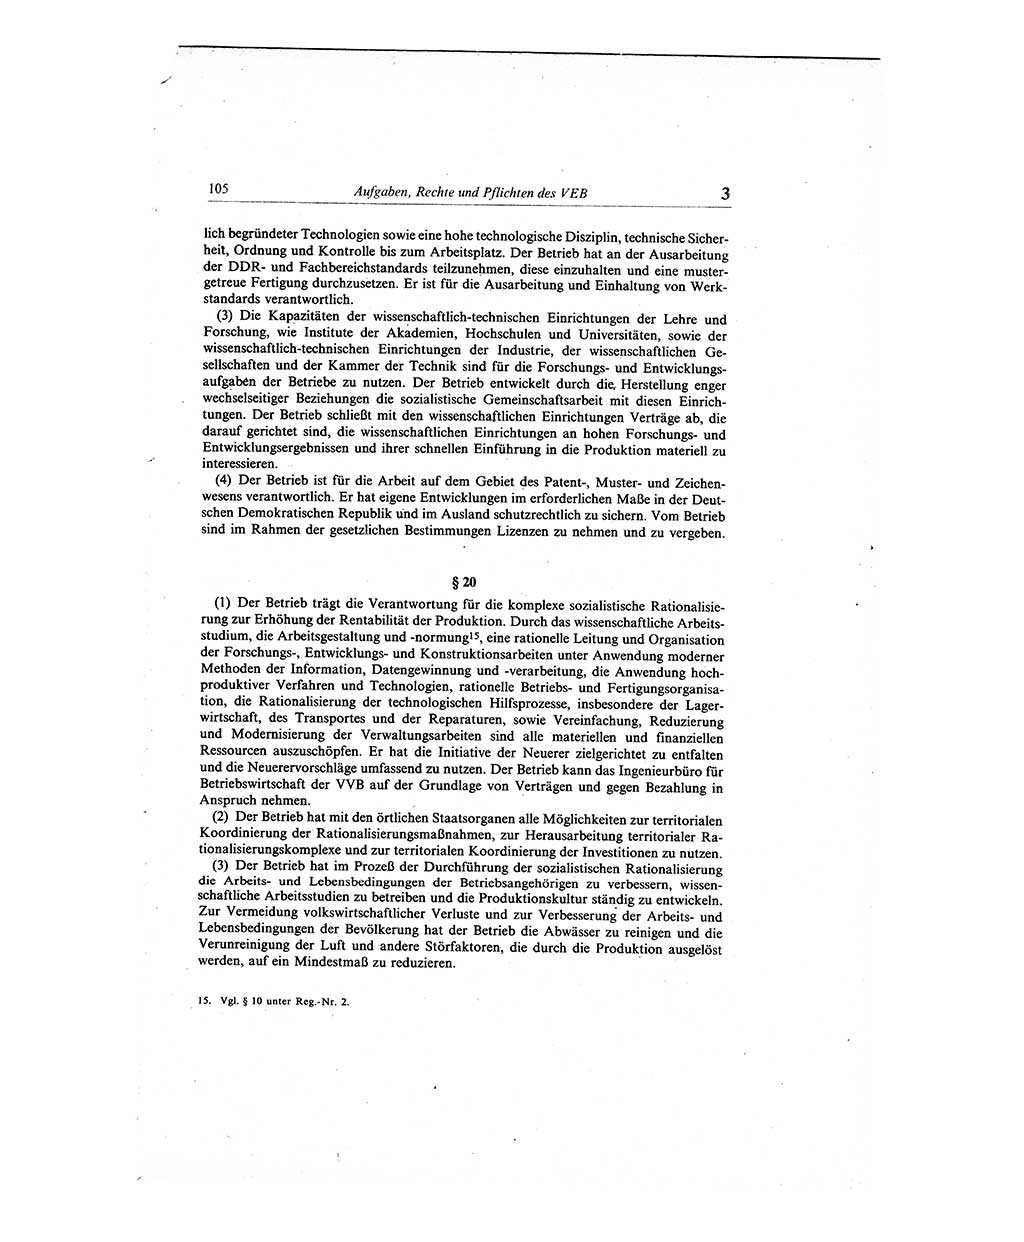 Gesetzbuch der Arbeit (GBA) und andere ausgewählte rechtliche Bestimmungen [Deutsche Demokratische Republik (DDR)] 1968, Seite 105 (GBA DDR 1968, S. 105)